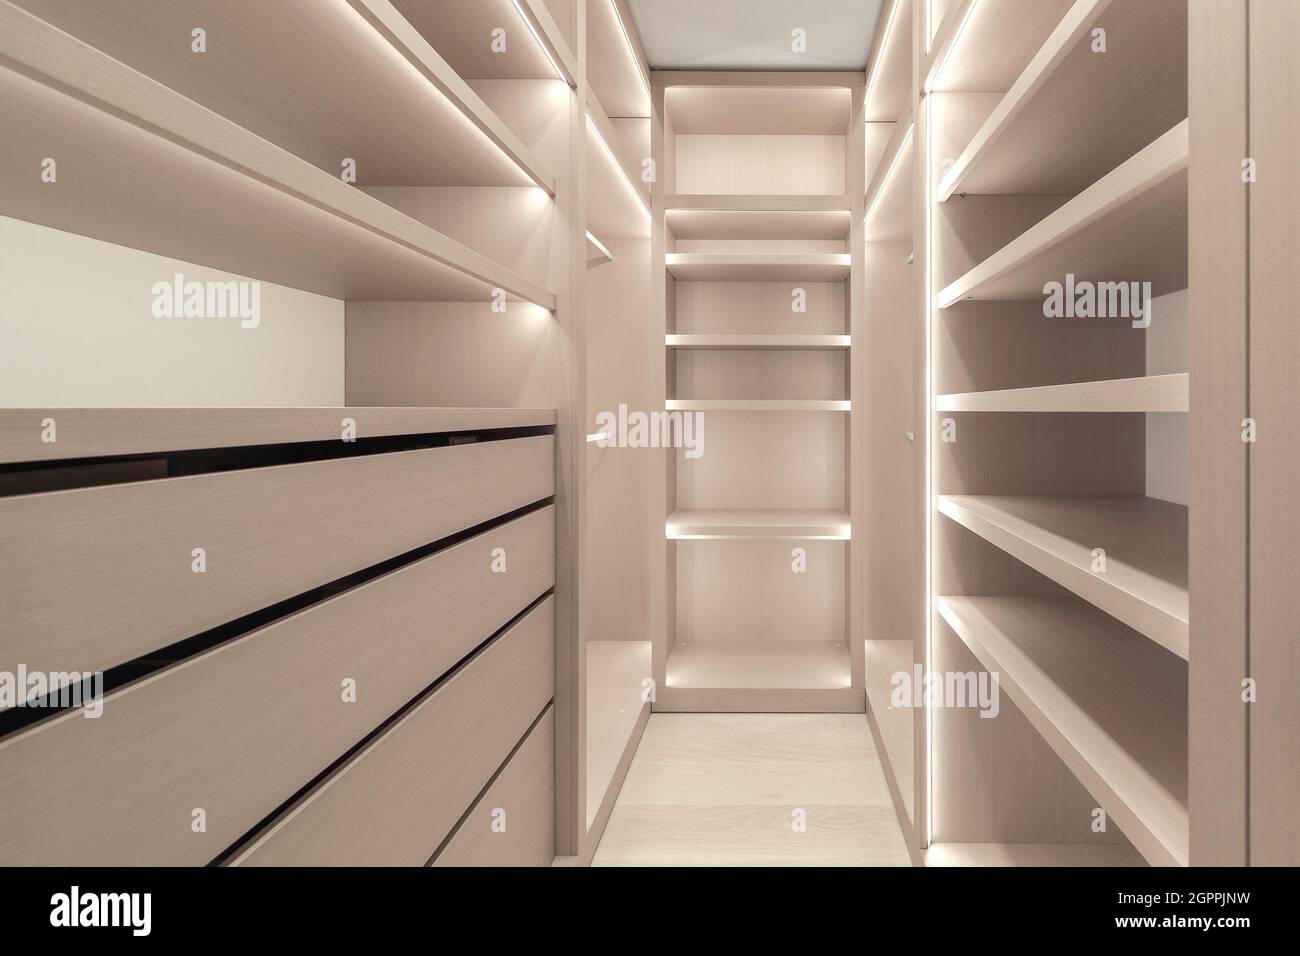 Estantes de madera con iluminación LED dentro del armario, la luz